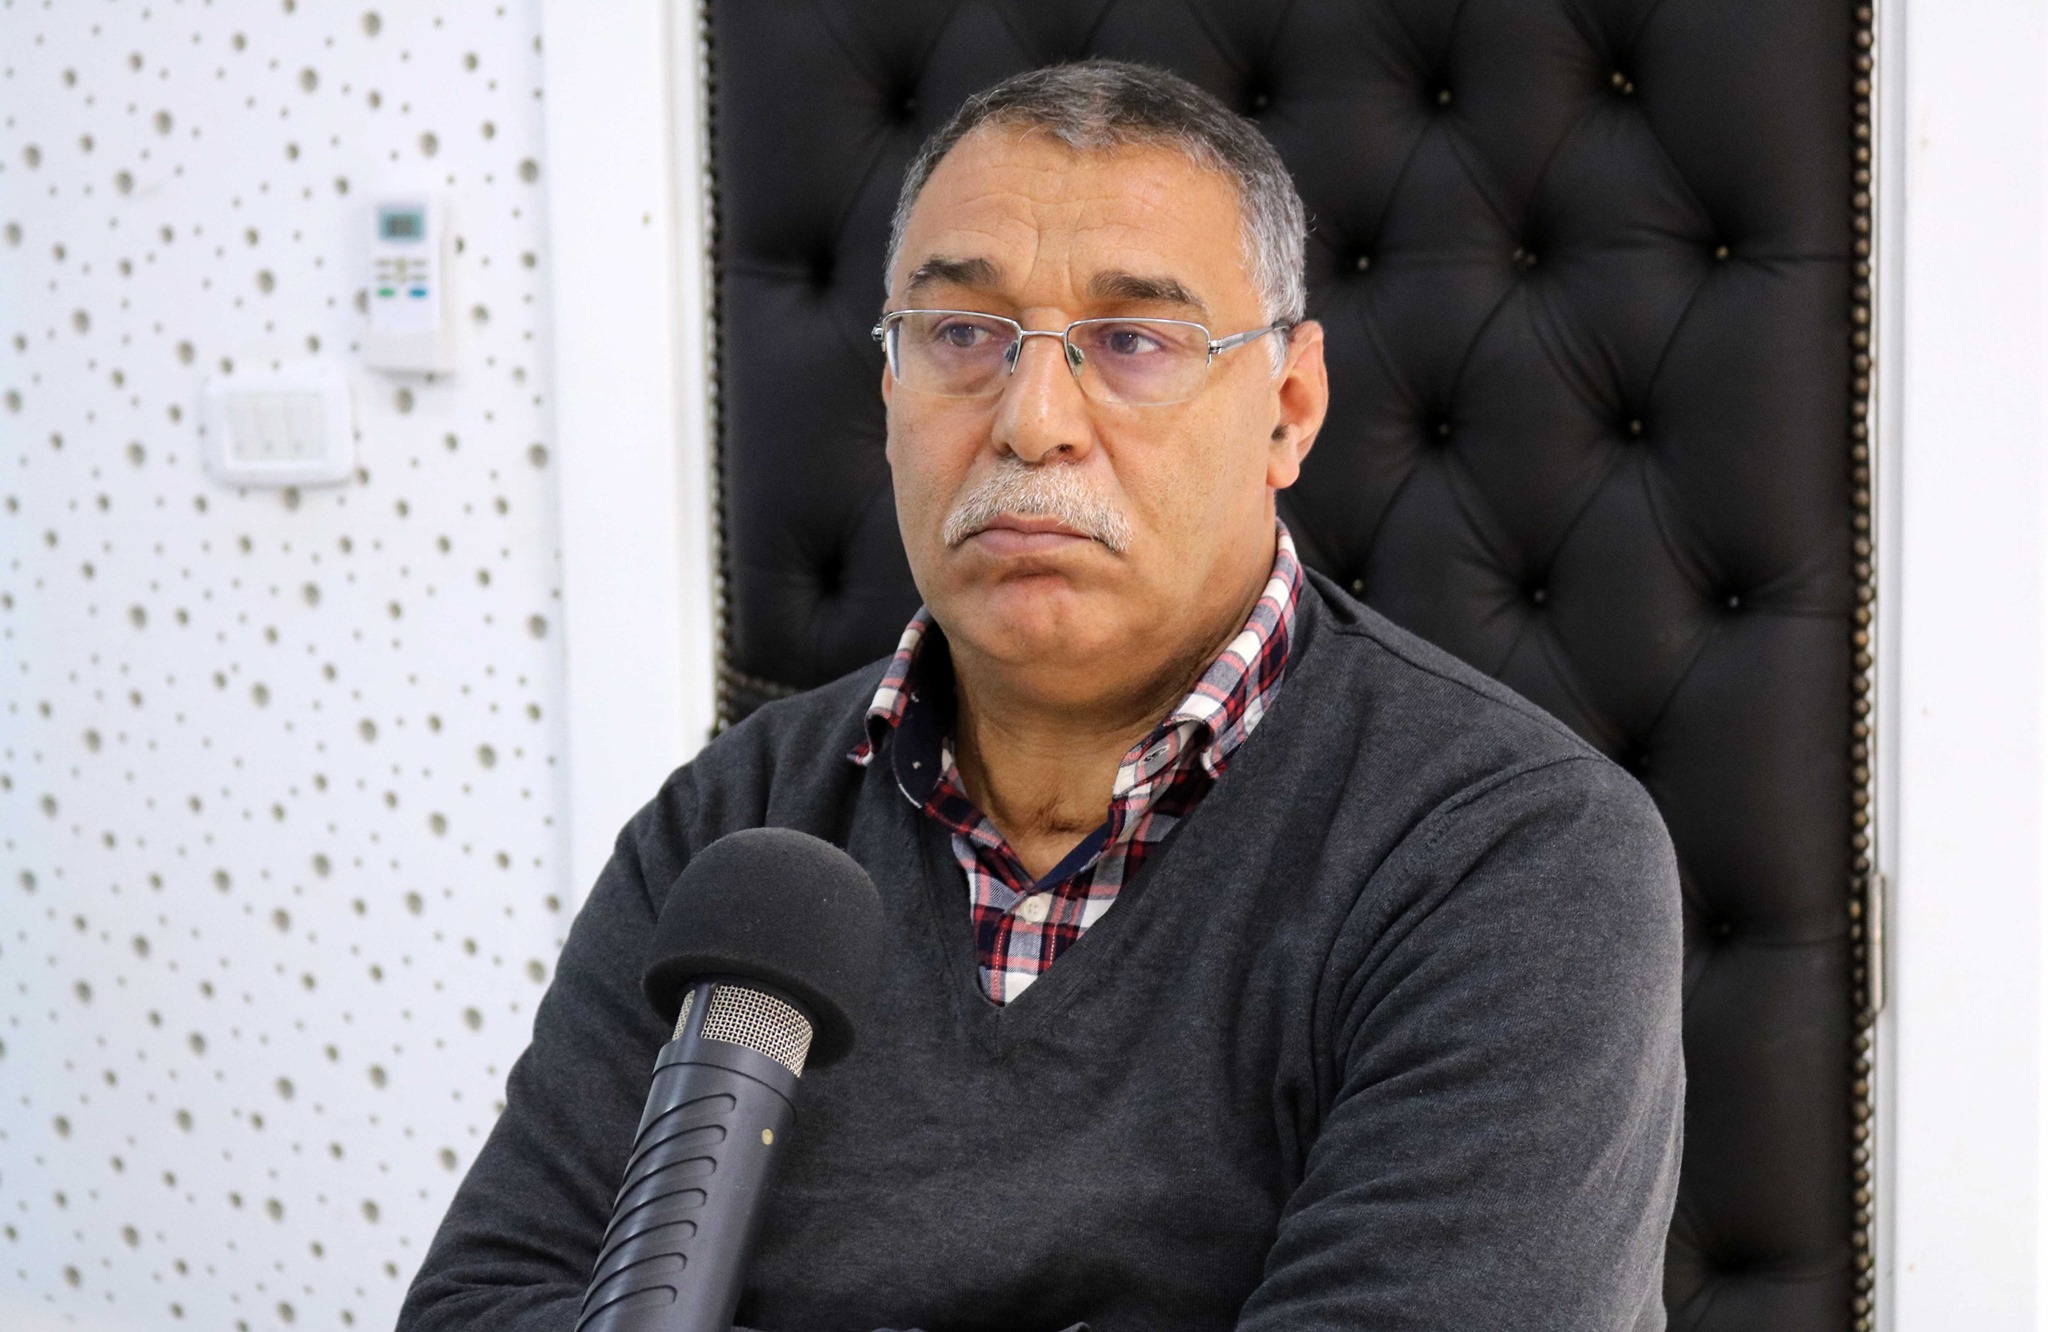 Tunisie-Abdelhamid Jelassi: « L’atelier de Jebali, dédié à la fabrication de climatiseurs, pris d’assaut, sur fond de fabrication d’explosifs! »